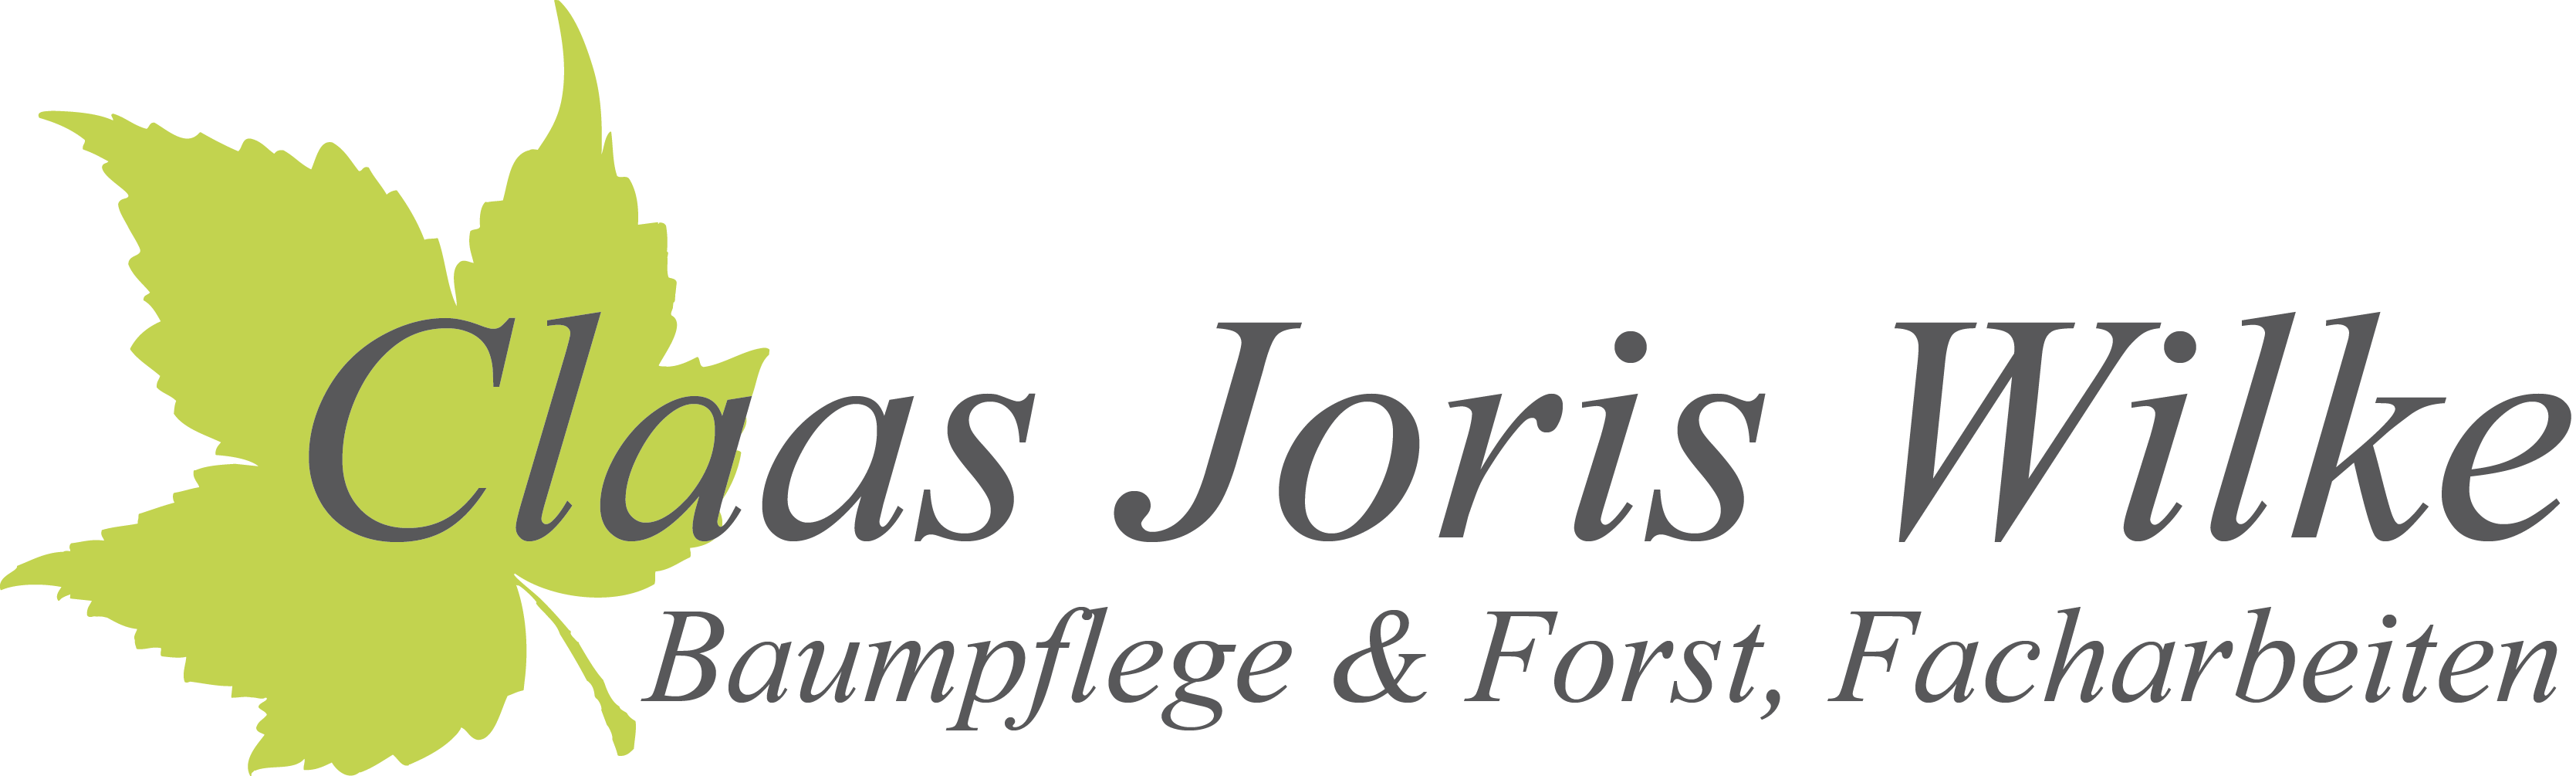 Logo von Claas Joris Wilke Baumpflege & Forst, Facharbeiten